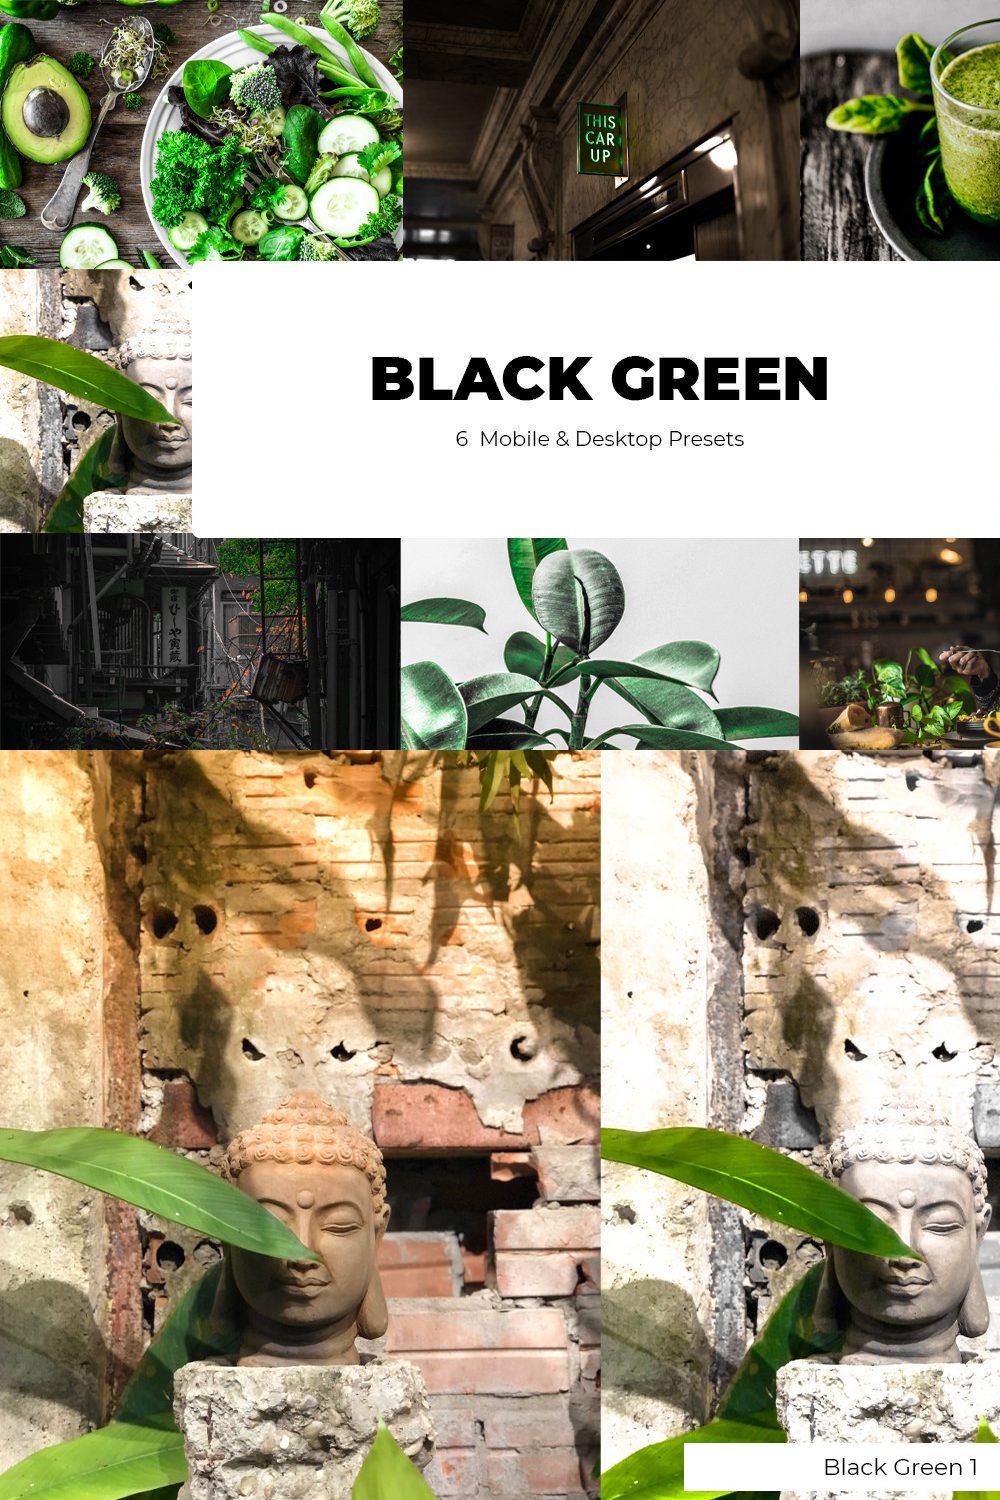 BLACK GREEN Lightroom Presets pinterest preview image.